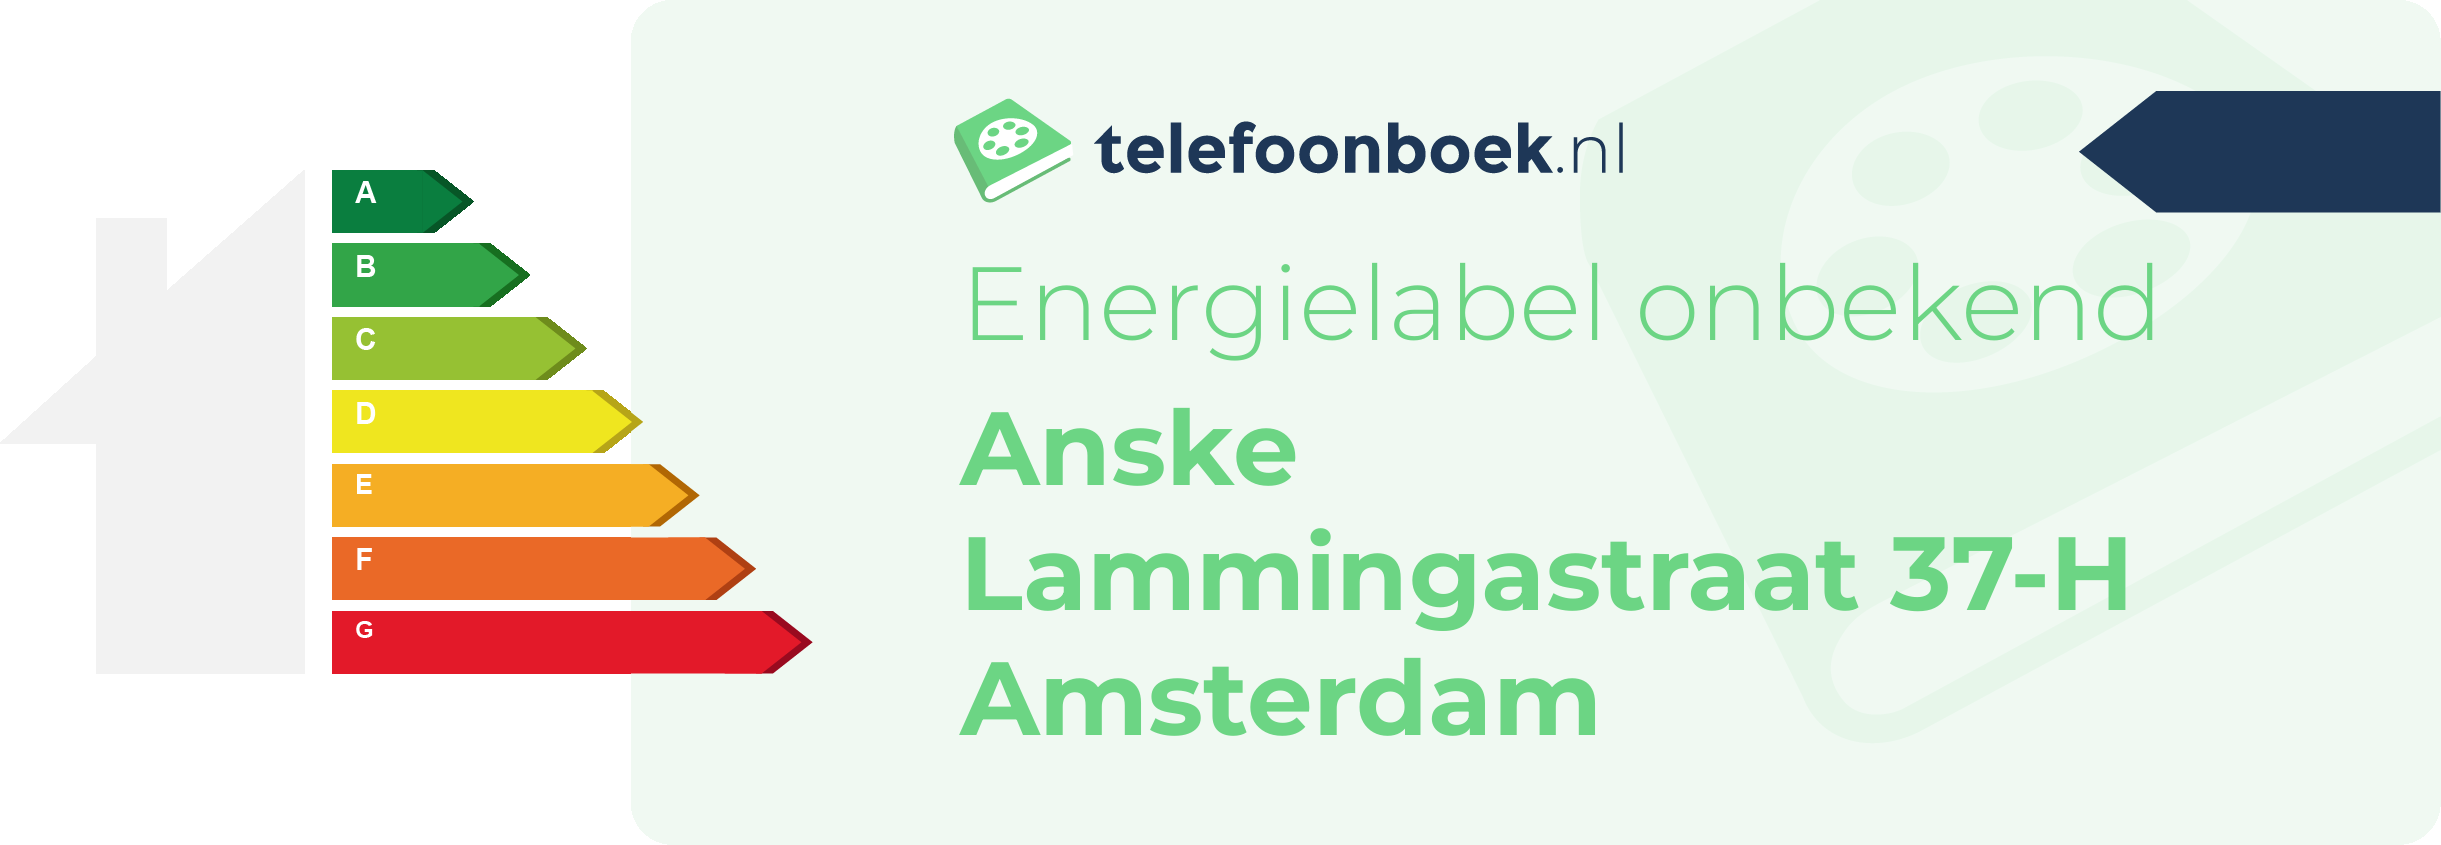 Energielabel Anske Lammingastraat 37-H Amsterdam